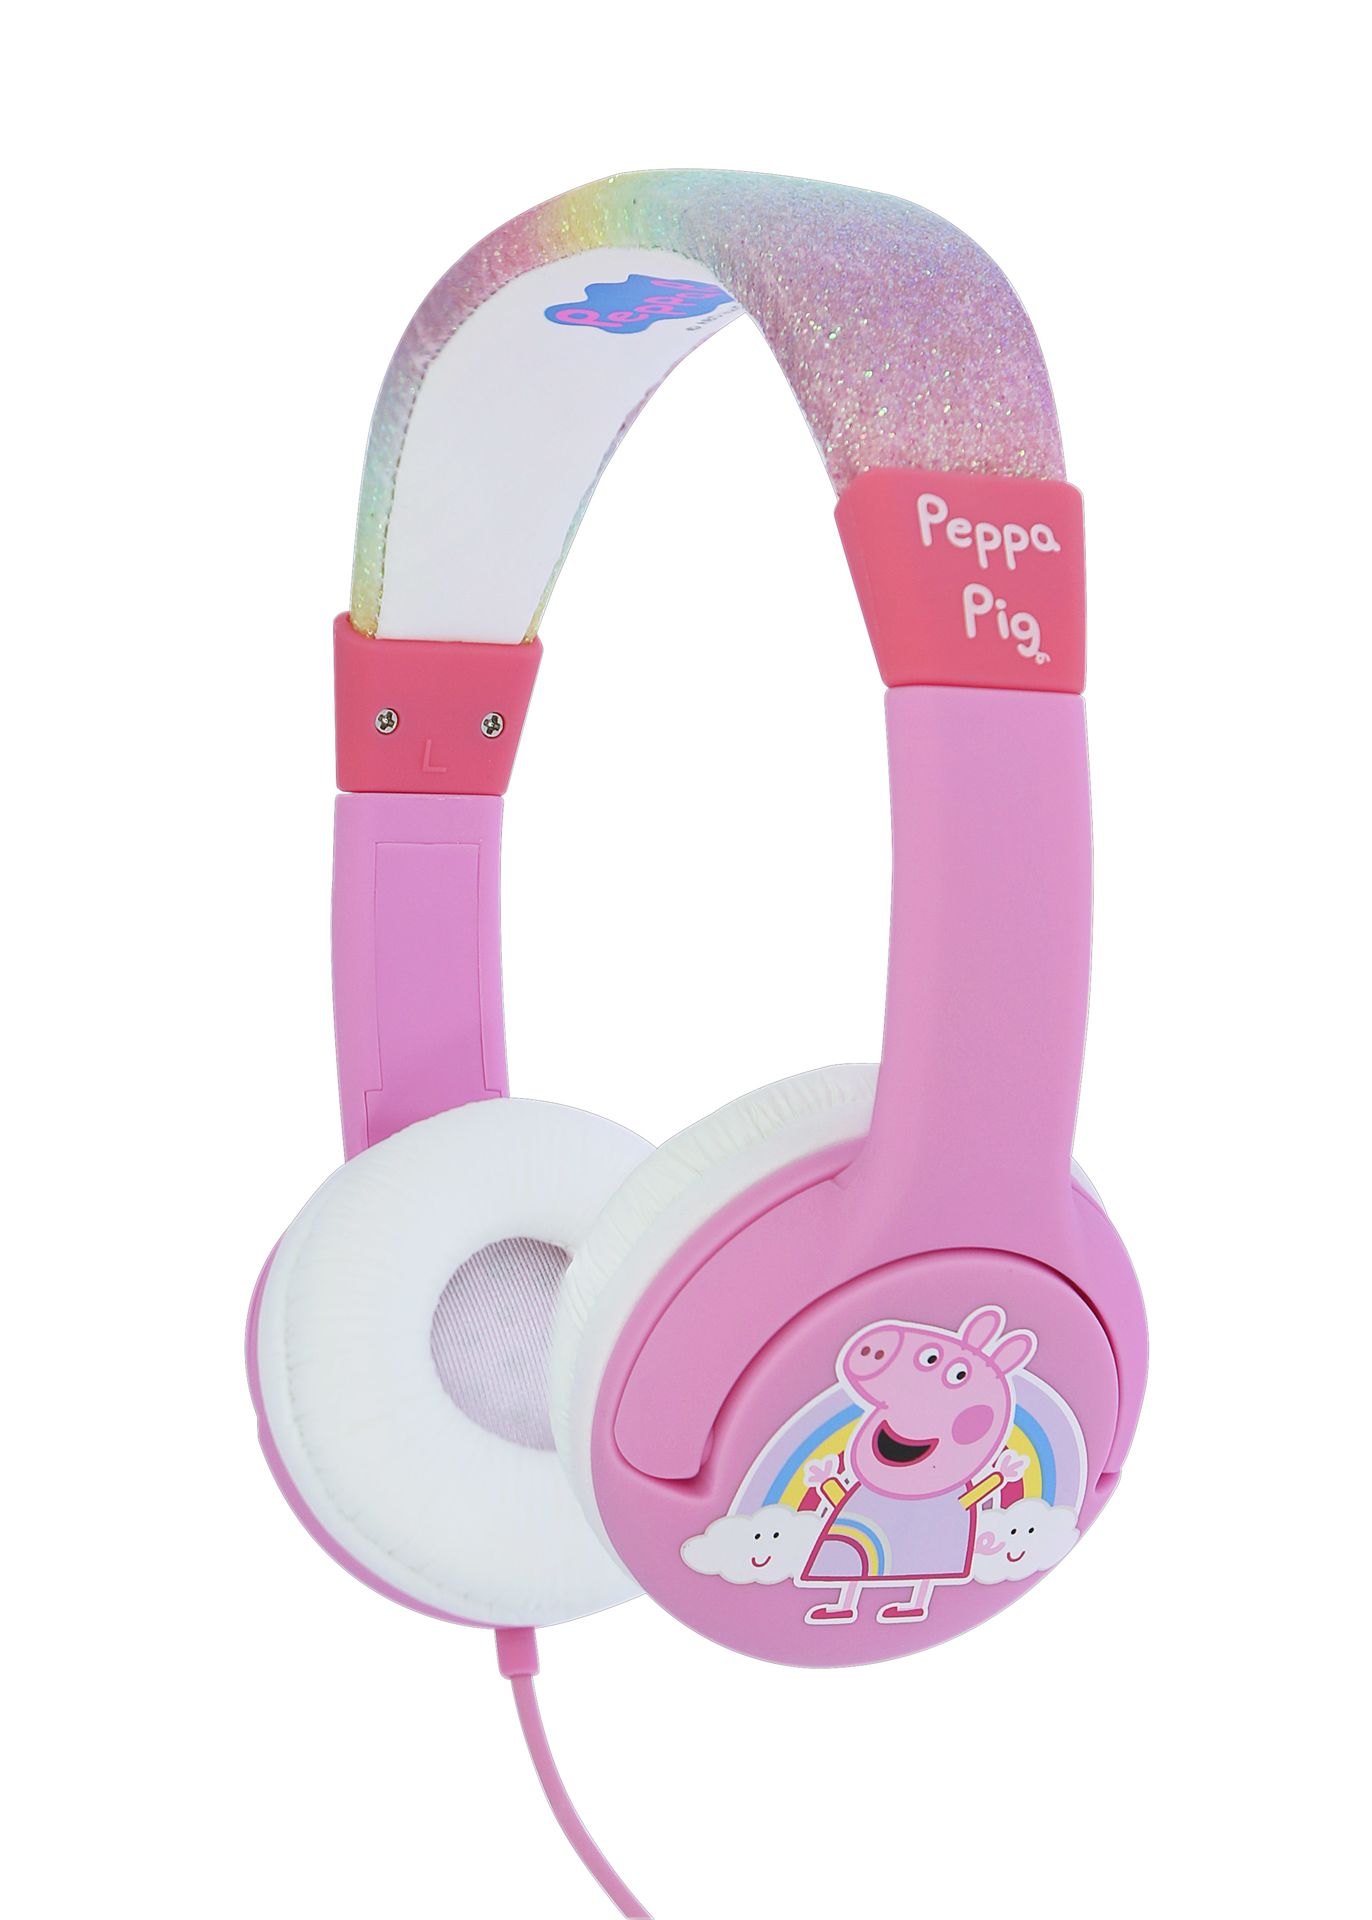 Peppa Pig - Casque audio Arc-en-ciel pailleté pour enfants